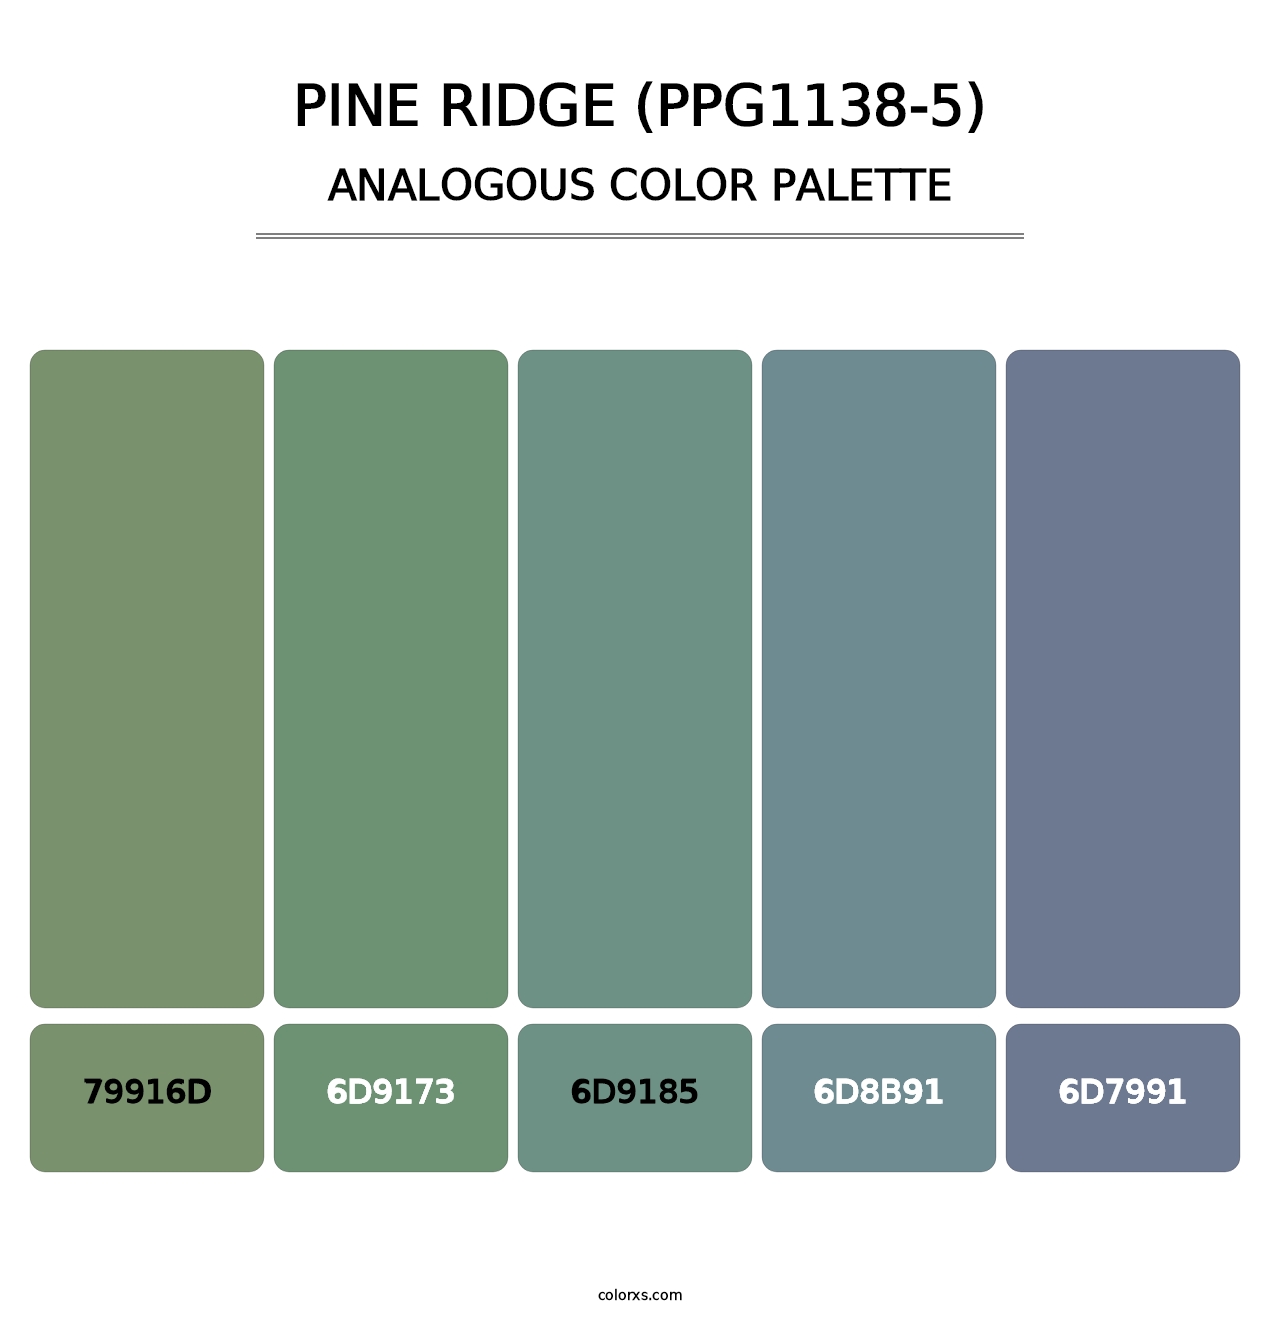 Pine Ridge (PPG1138-5) - Analogous Color Palette